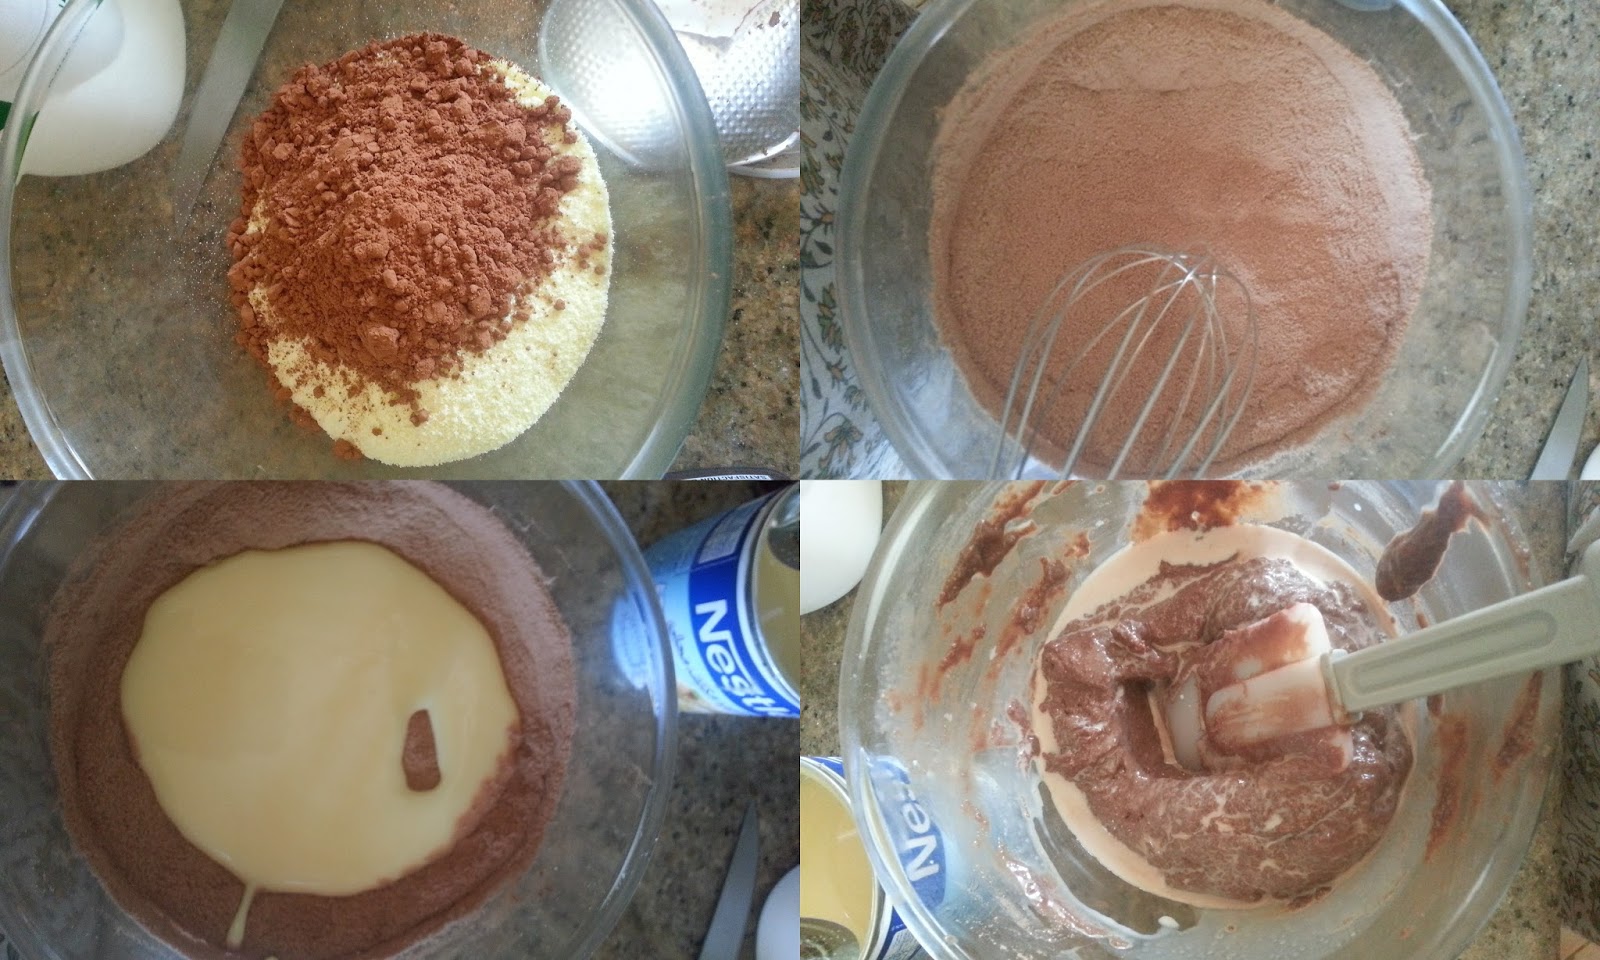 How to make Chocolate fudge